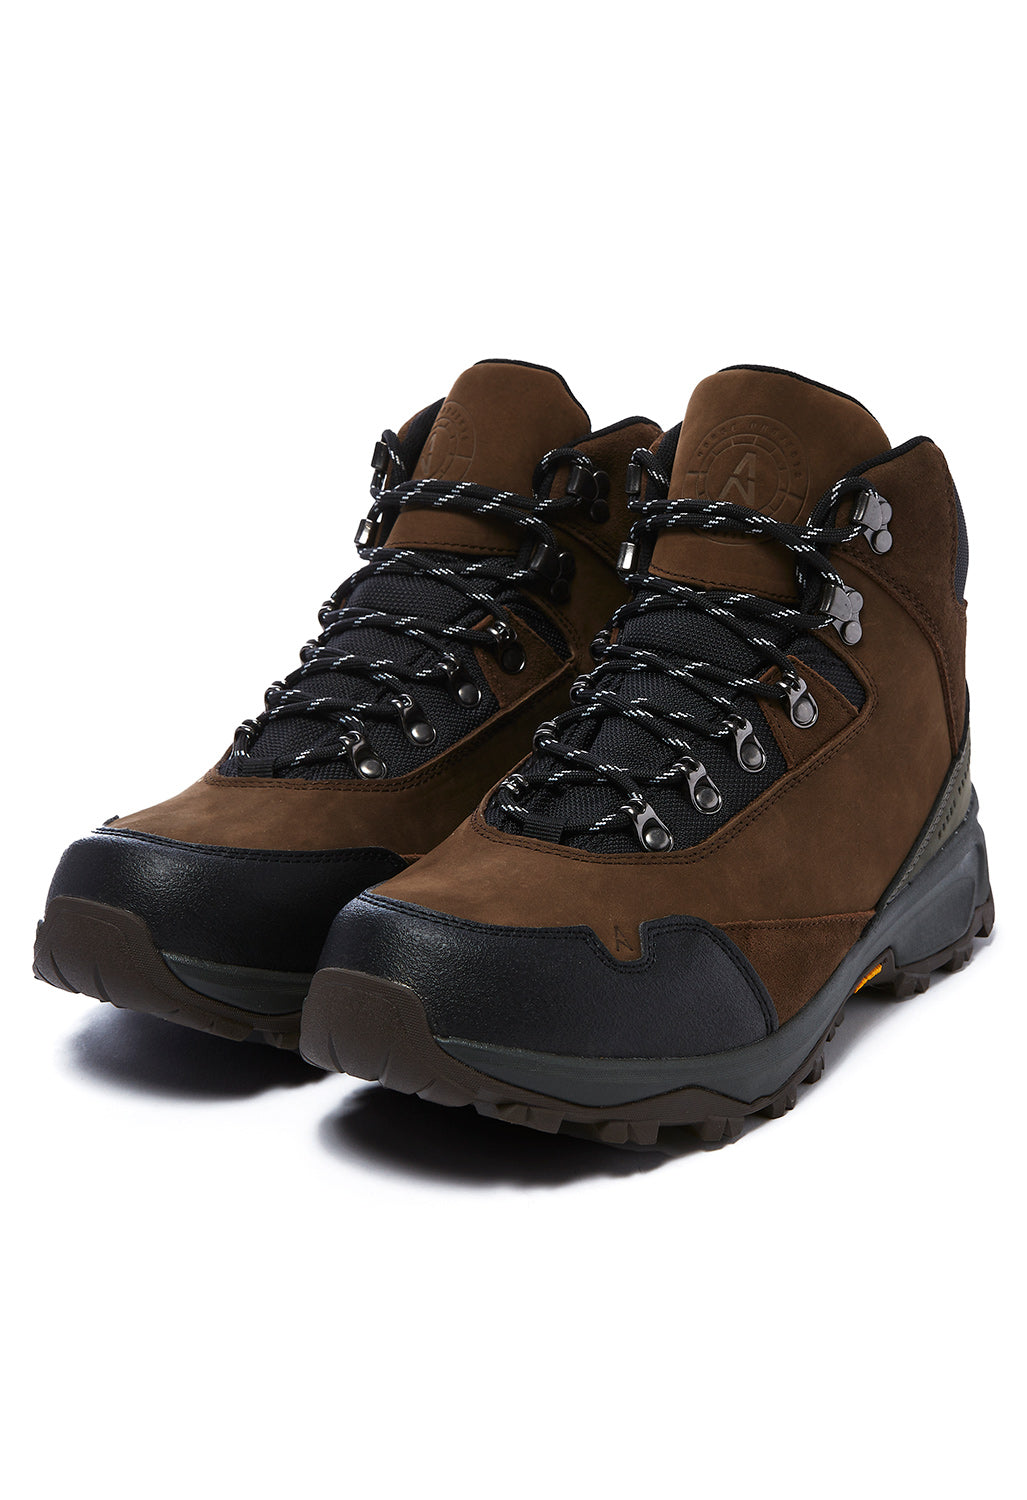 Trekking Boots - Rust Brown